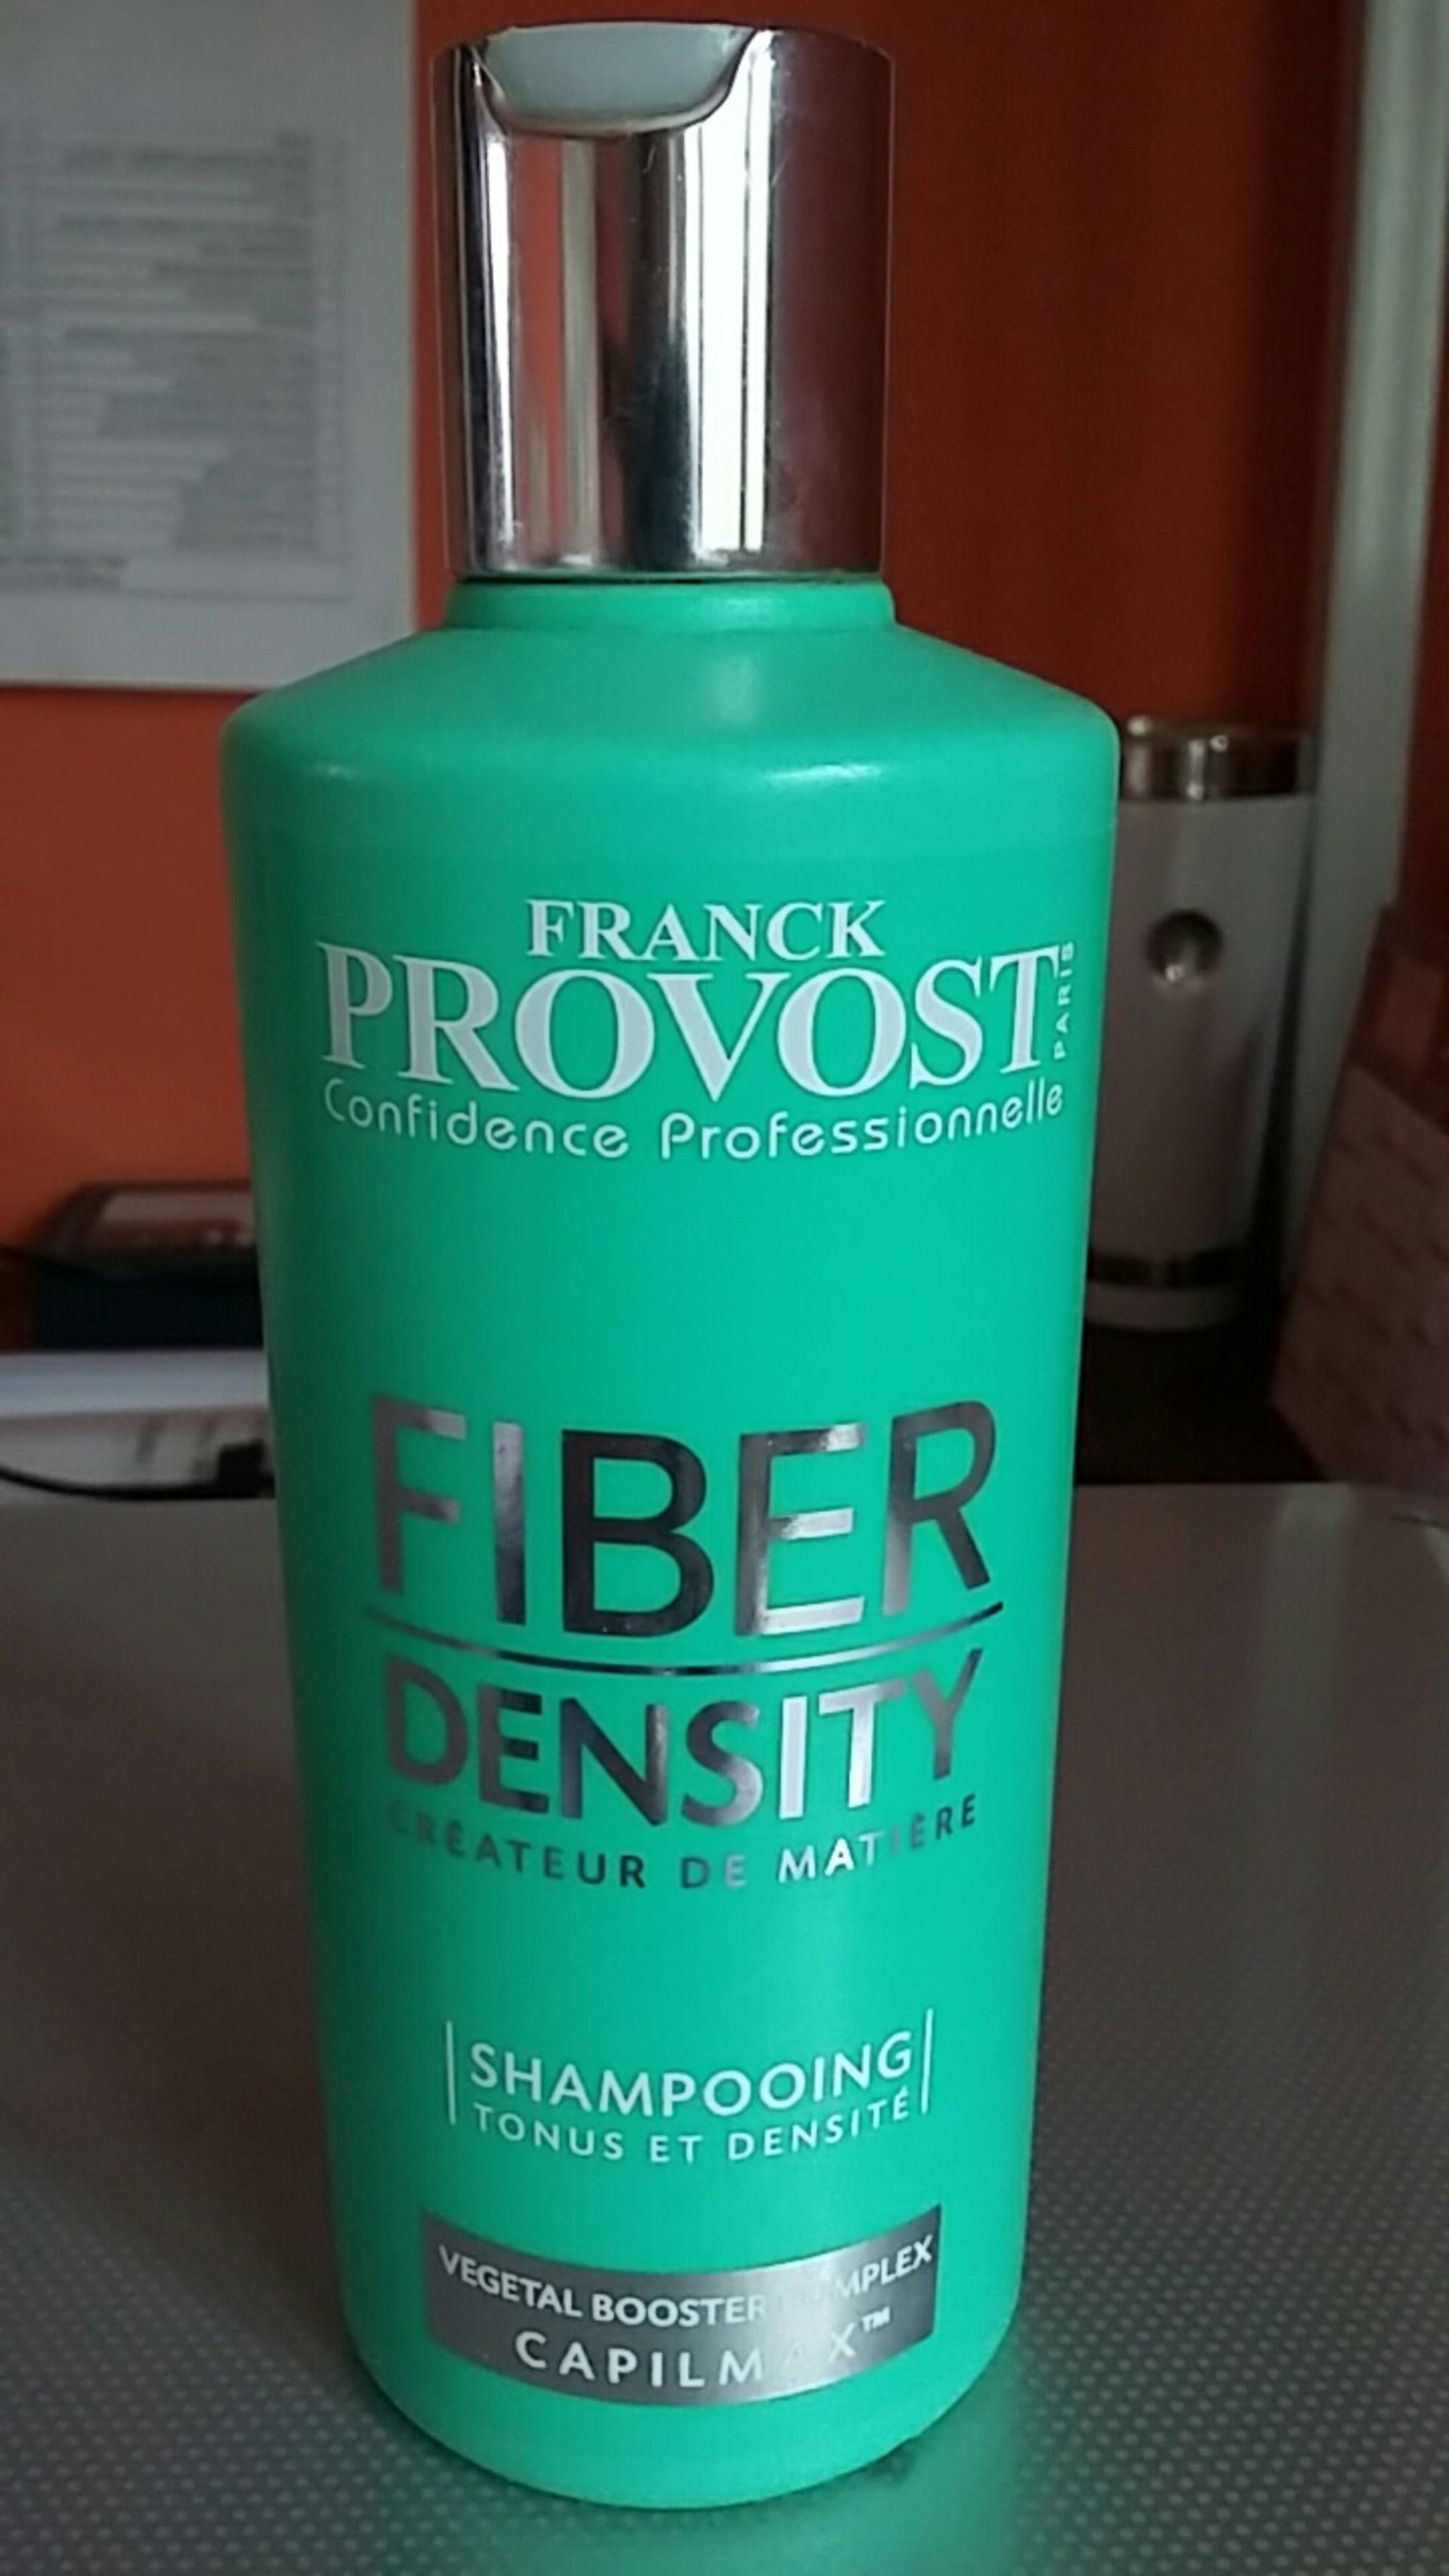 FRANCK PROVOST - Fiber density - Shampooing